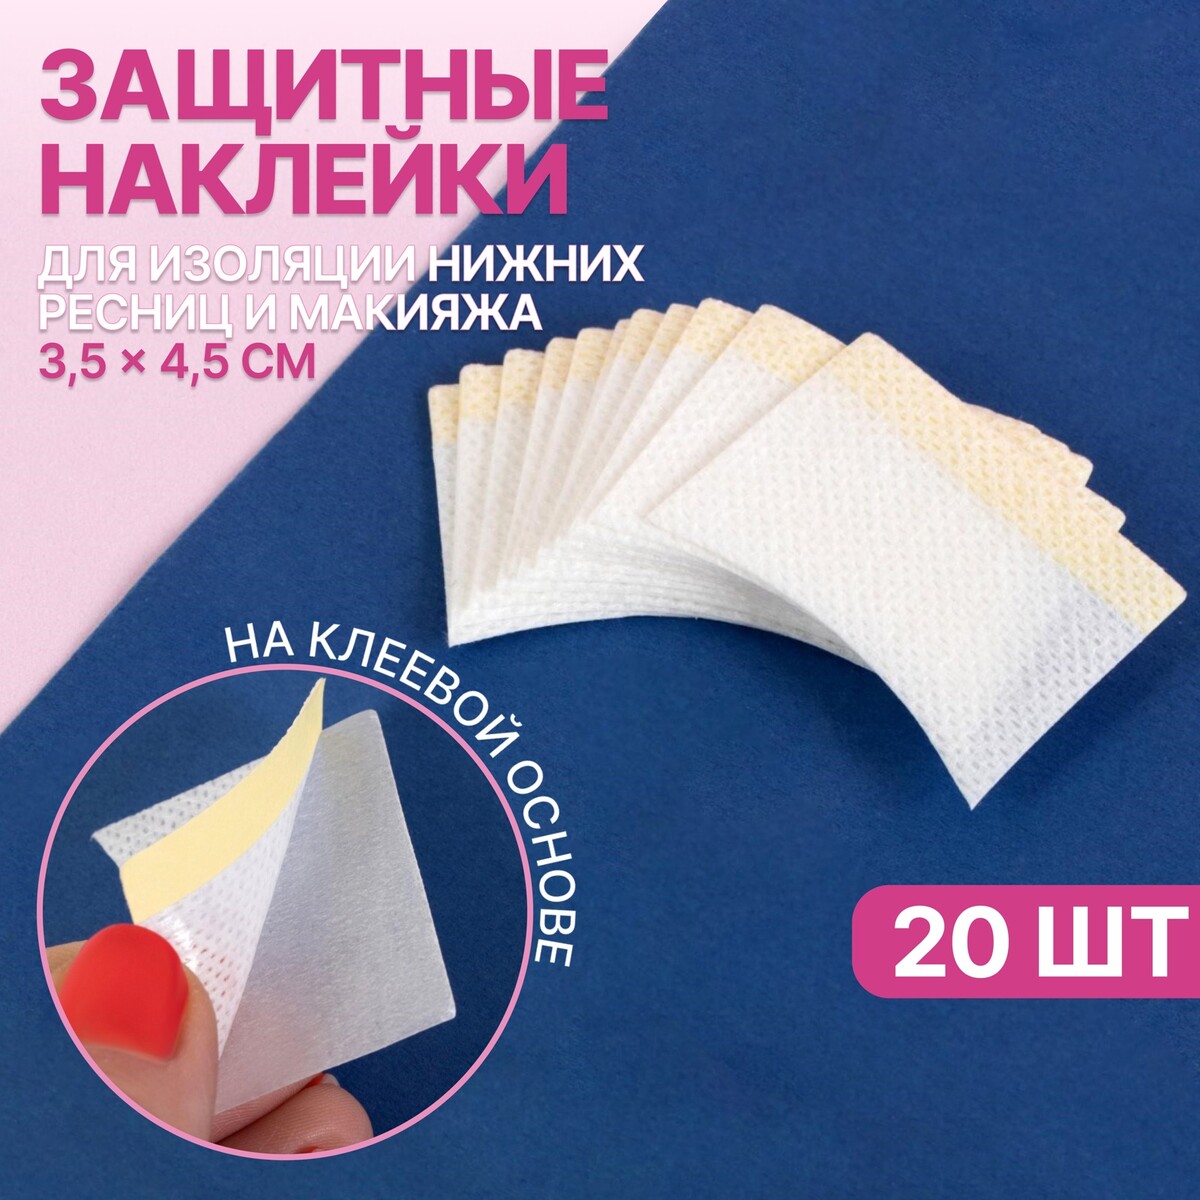 Набор защитных наклеек для изоляции нижних ресниц и макияжа, 10 пар, 3,5 × 4,5 см Queen fair, цвет белый